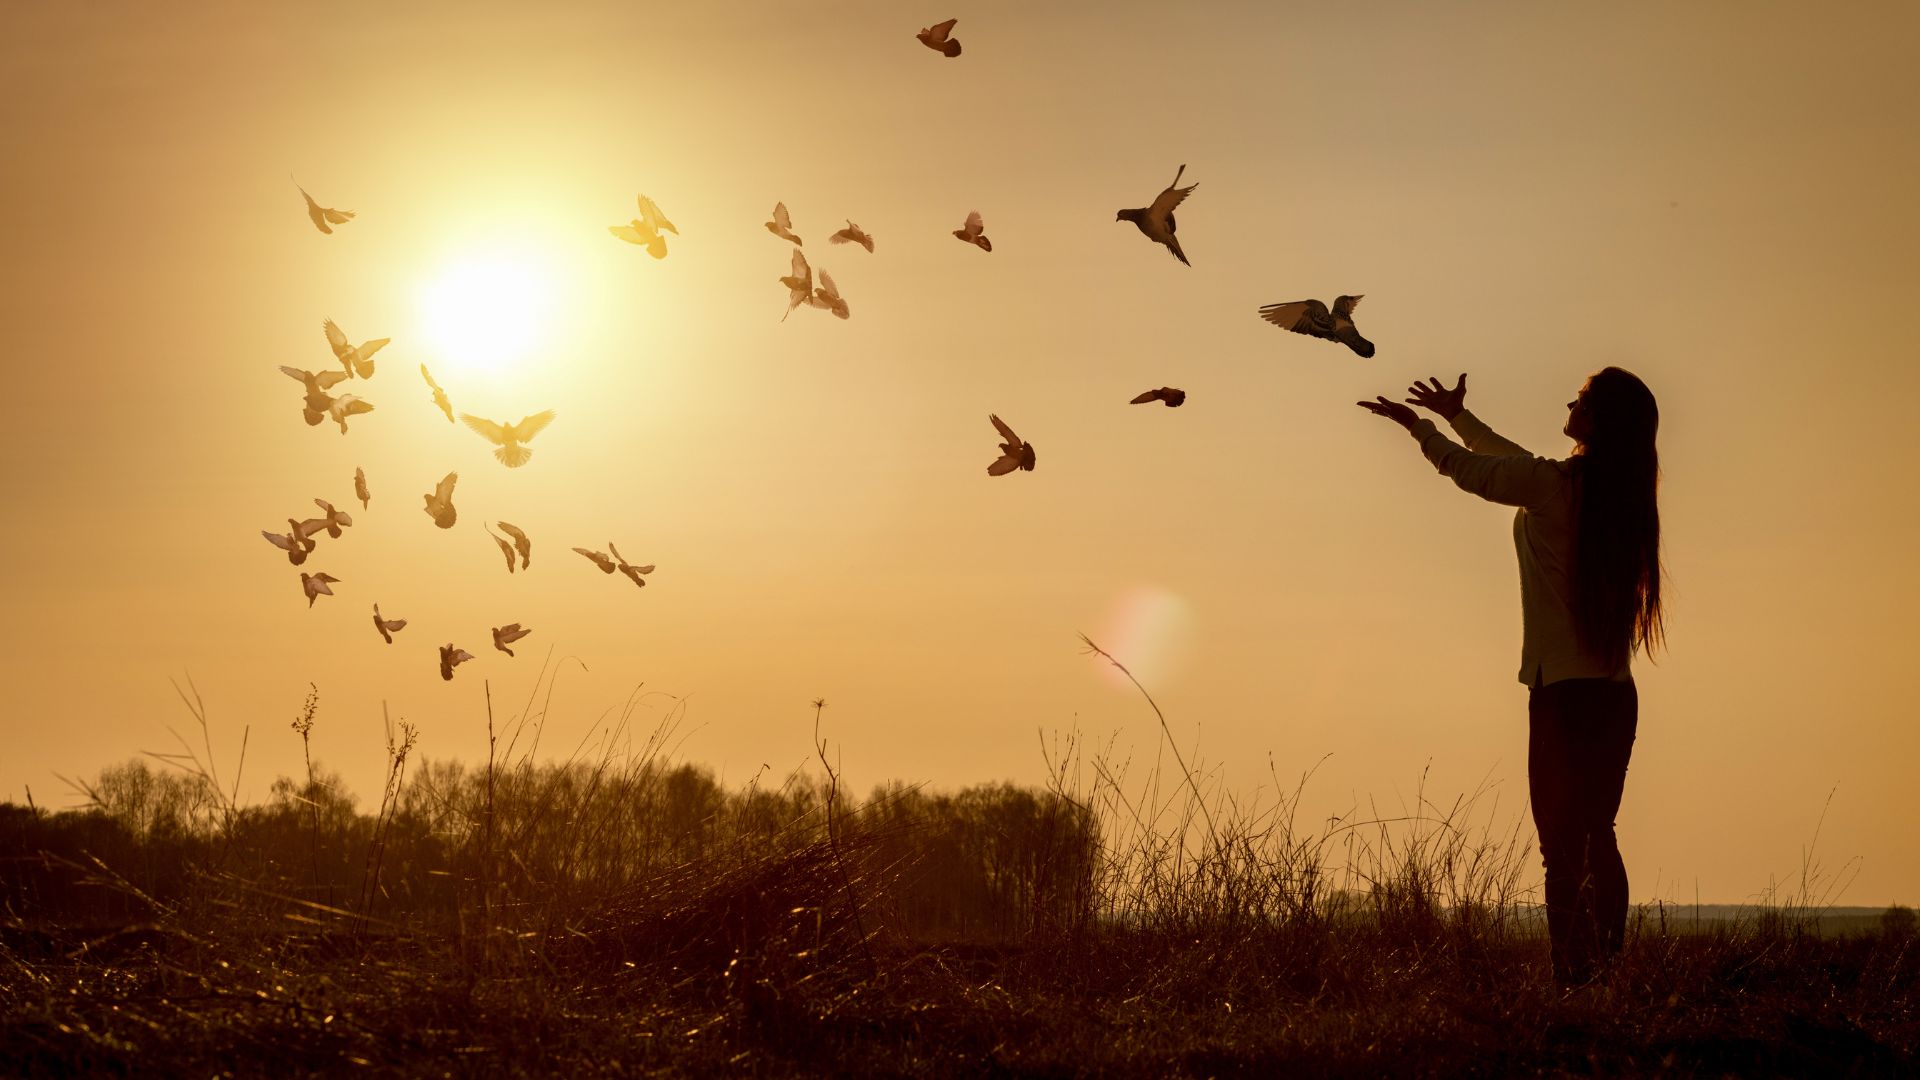 Imagem de uma moça de cabelos longos, olhando para o pôr do sol. Suas mãos estão direcionadas a ele e vários pássaros sobrevoam o local.